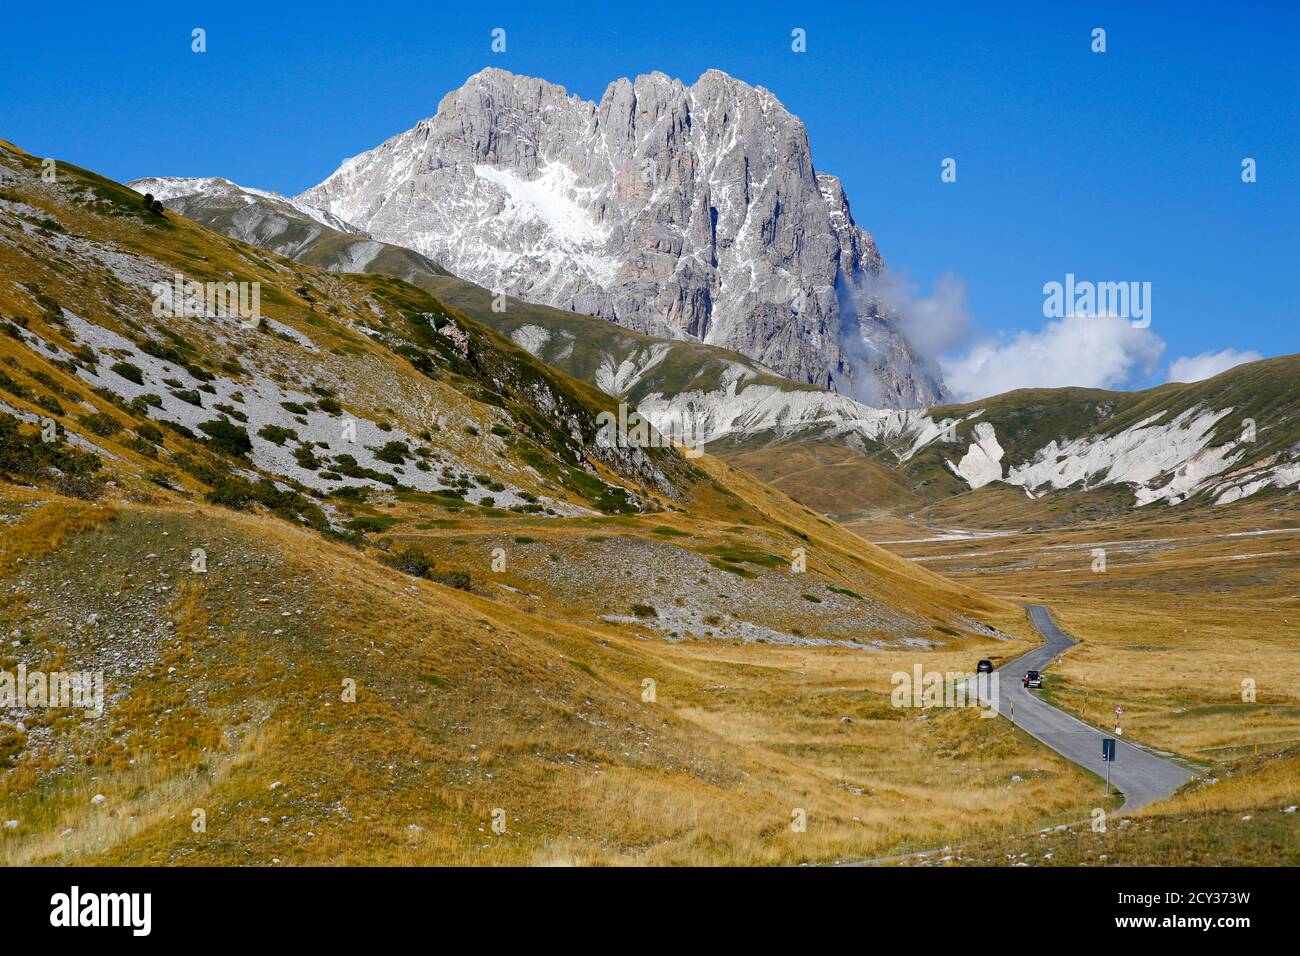 Corno Grande visto da campo Imperatore nel Gran Sasso, Abruzzo, Italia Foto  stock - Alamy